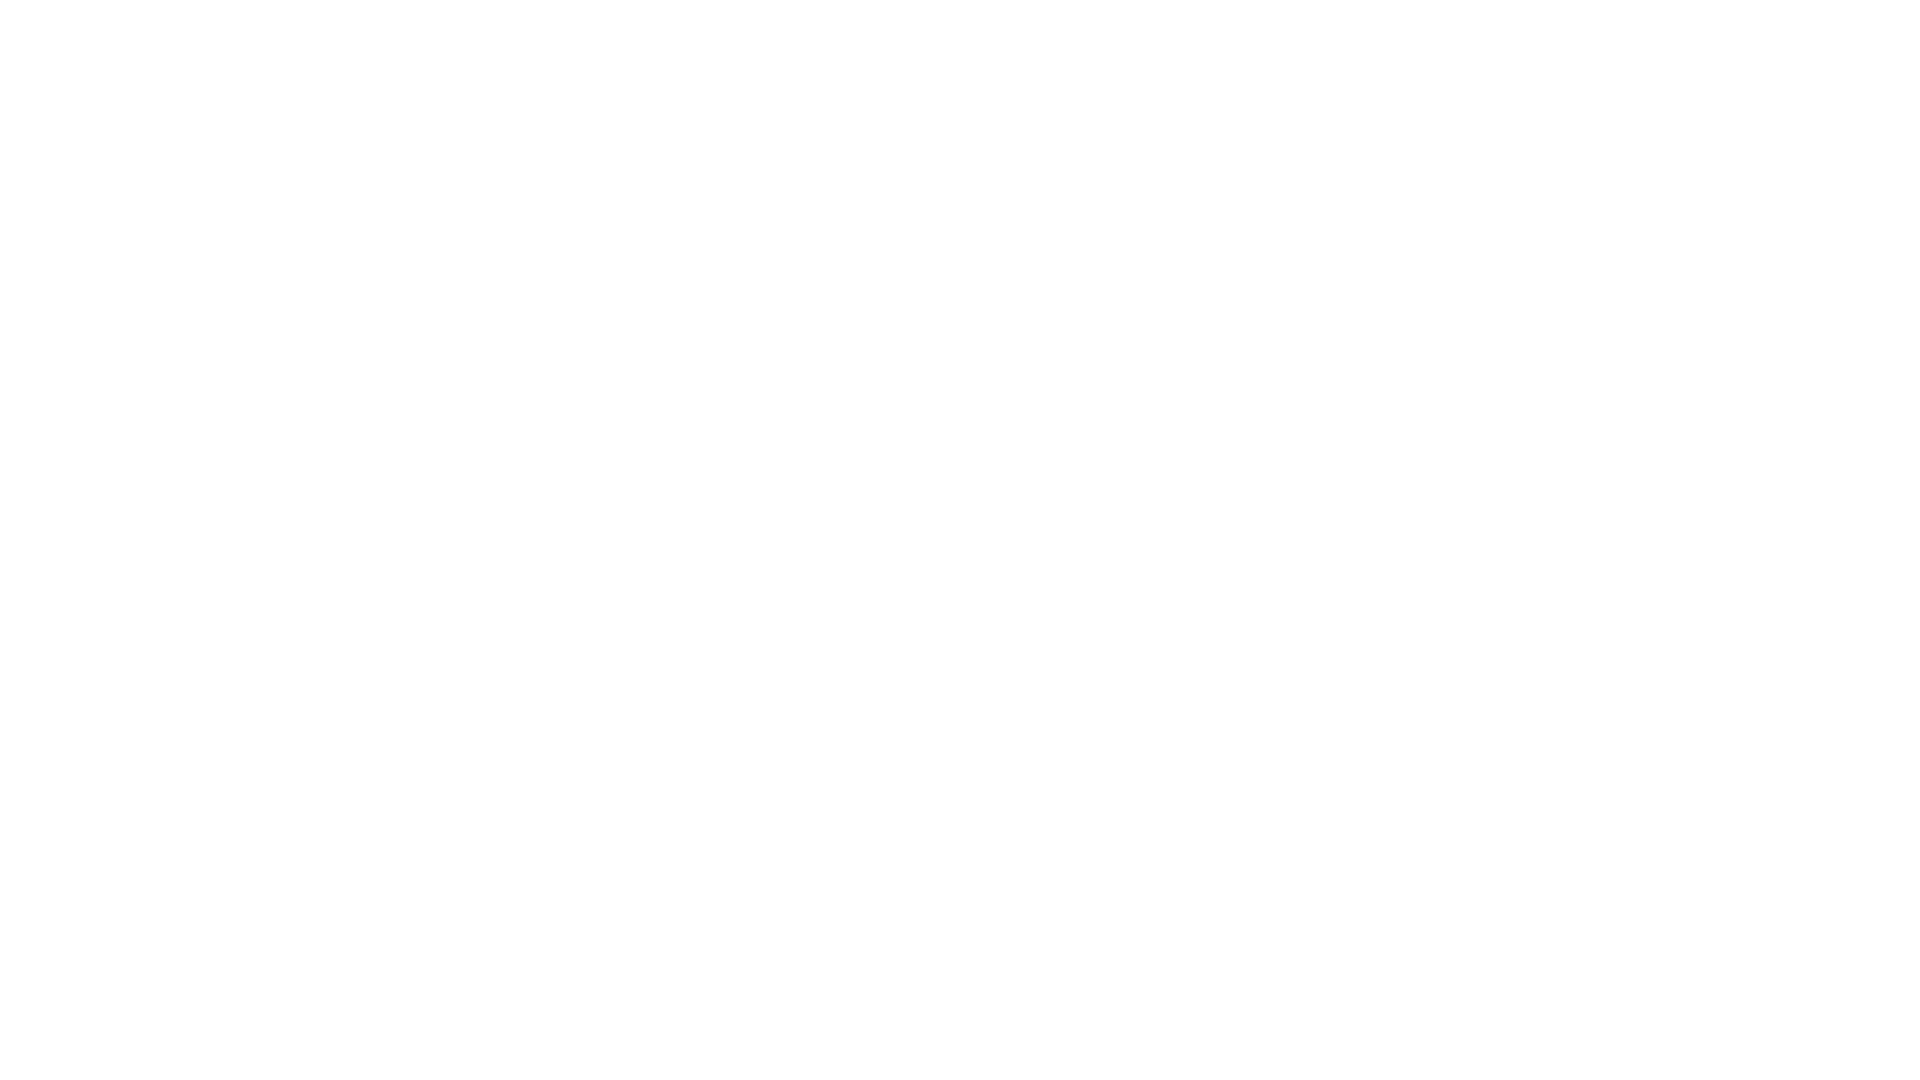 Eon Academy